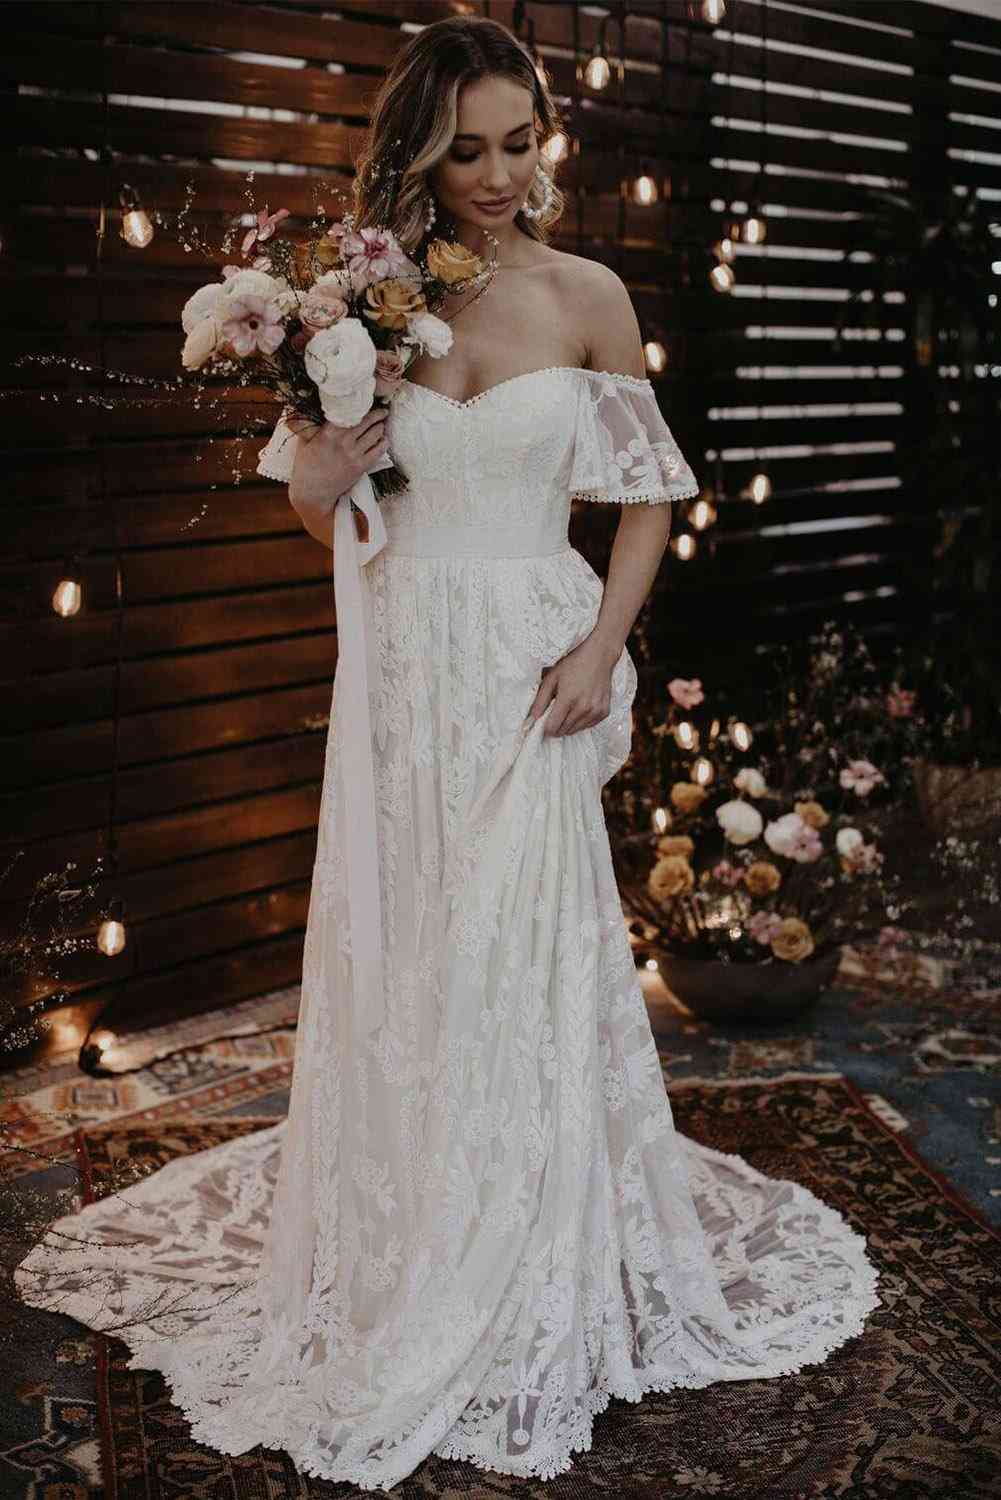 Le a válláról, egy esküvői estélyi ruha